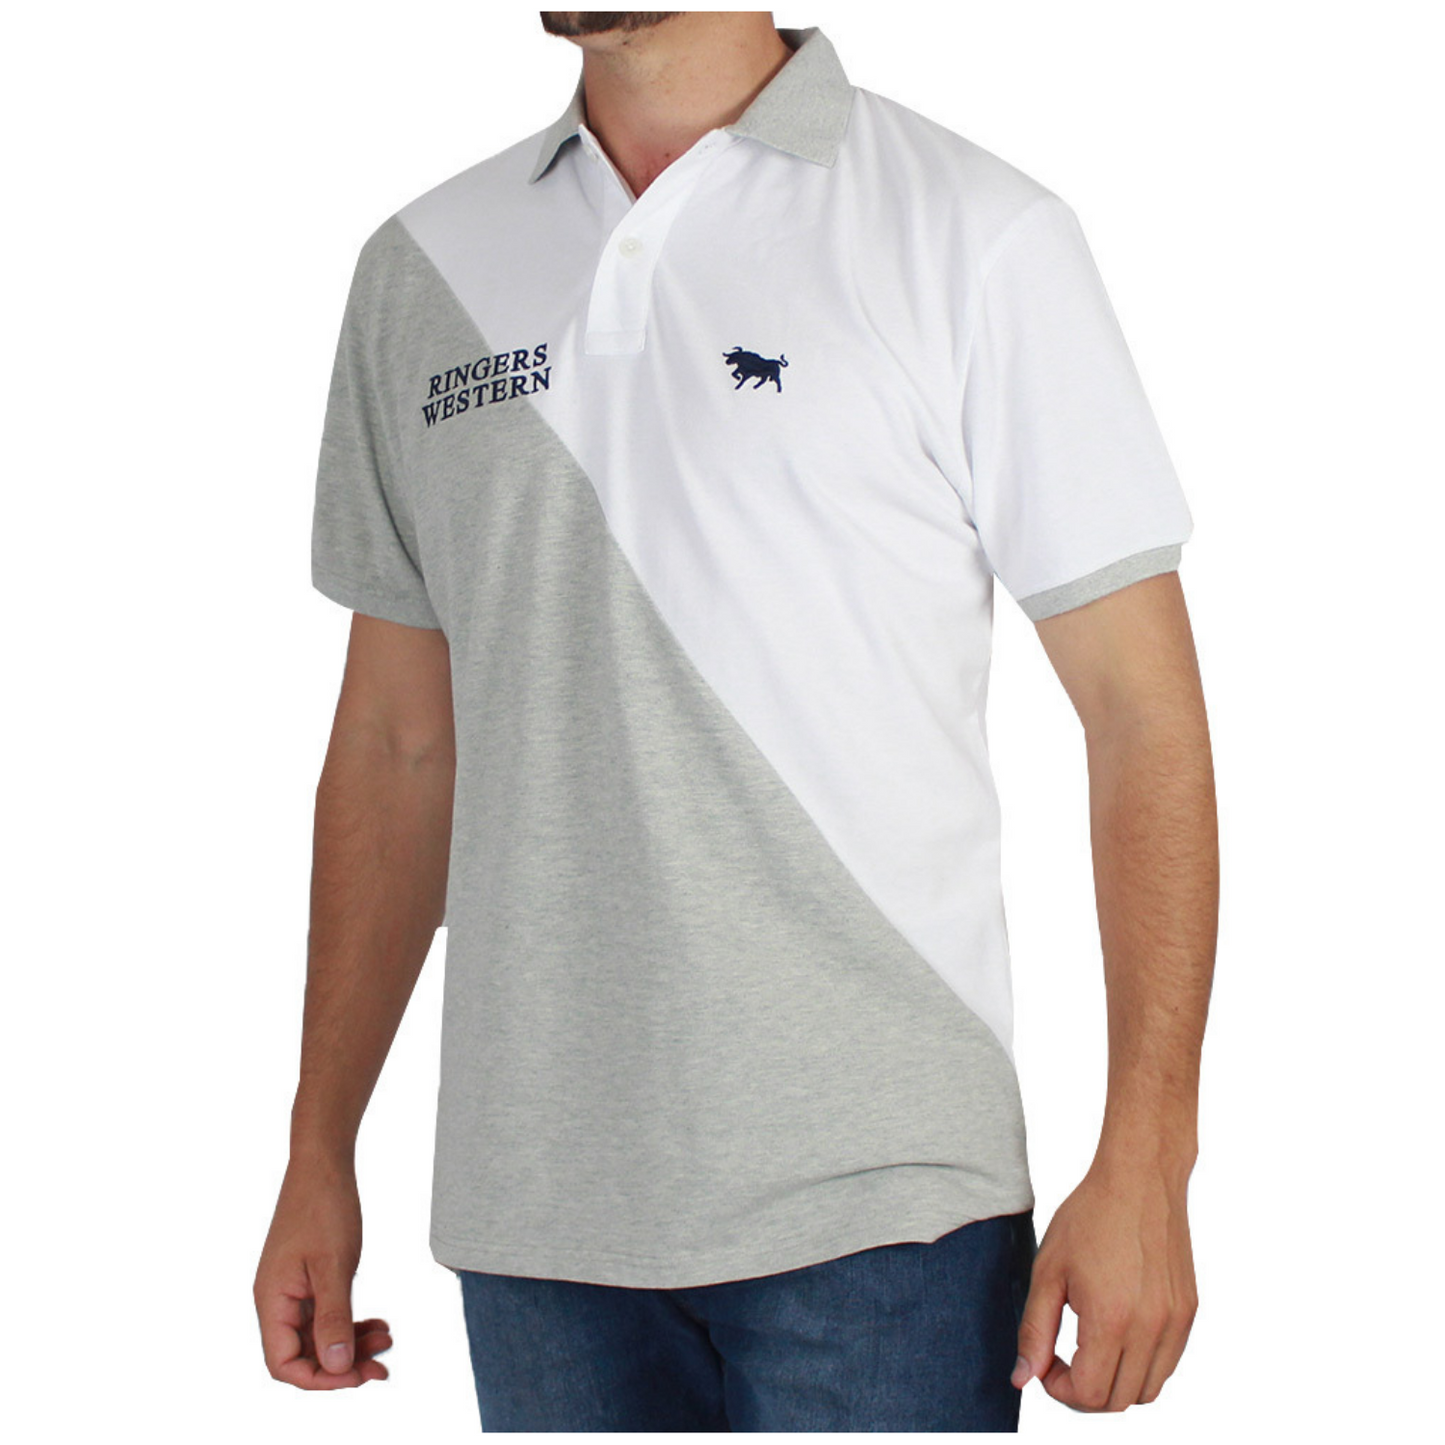 Ringers Western Men's Windsor Polo Shirt